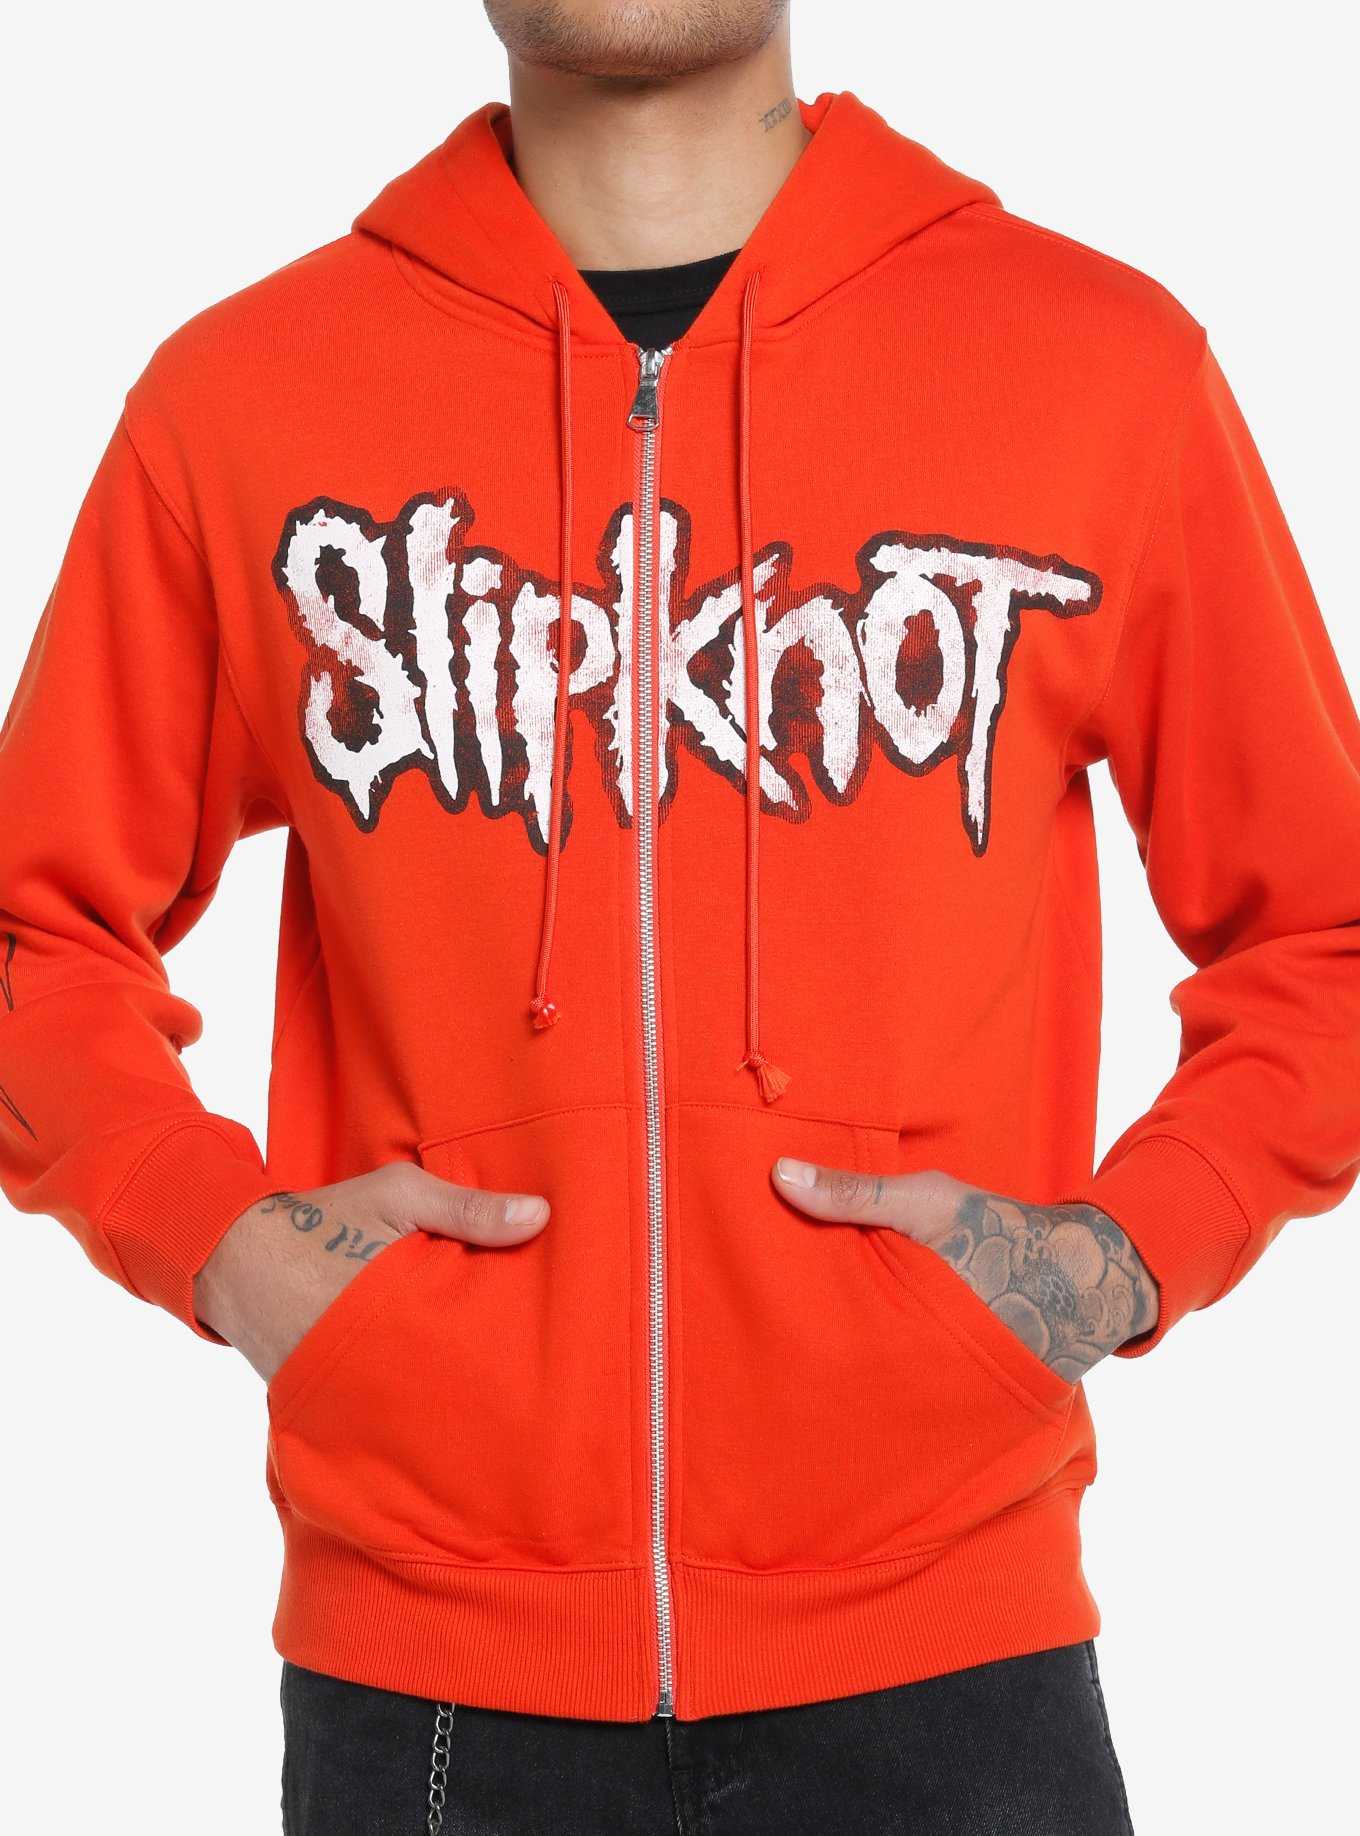 Slipknot Group Photo Orange Hoodie, , hi-res